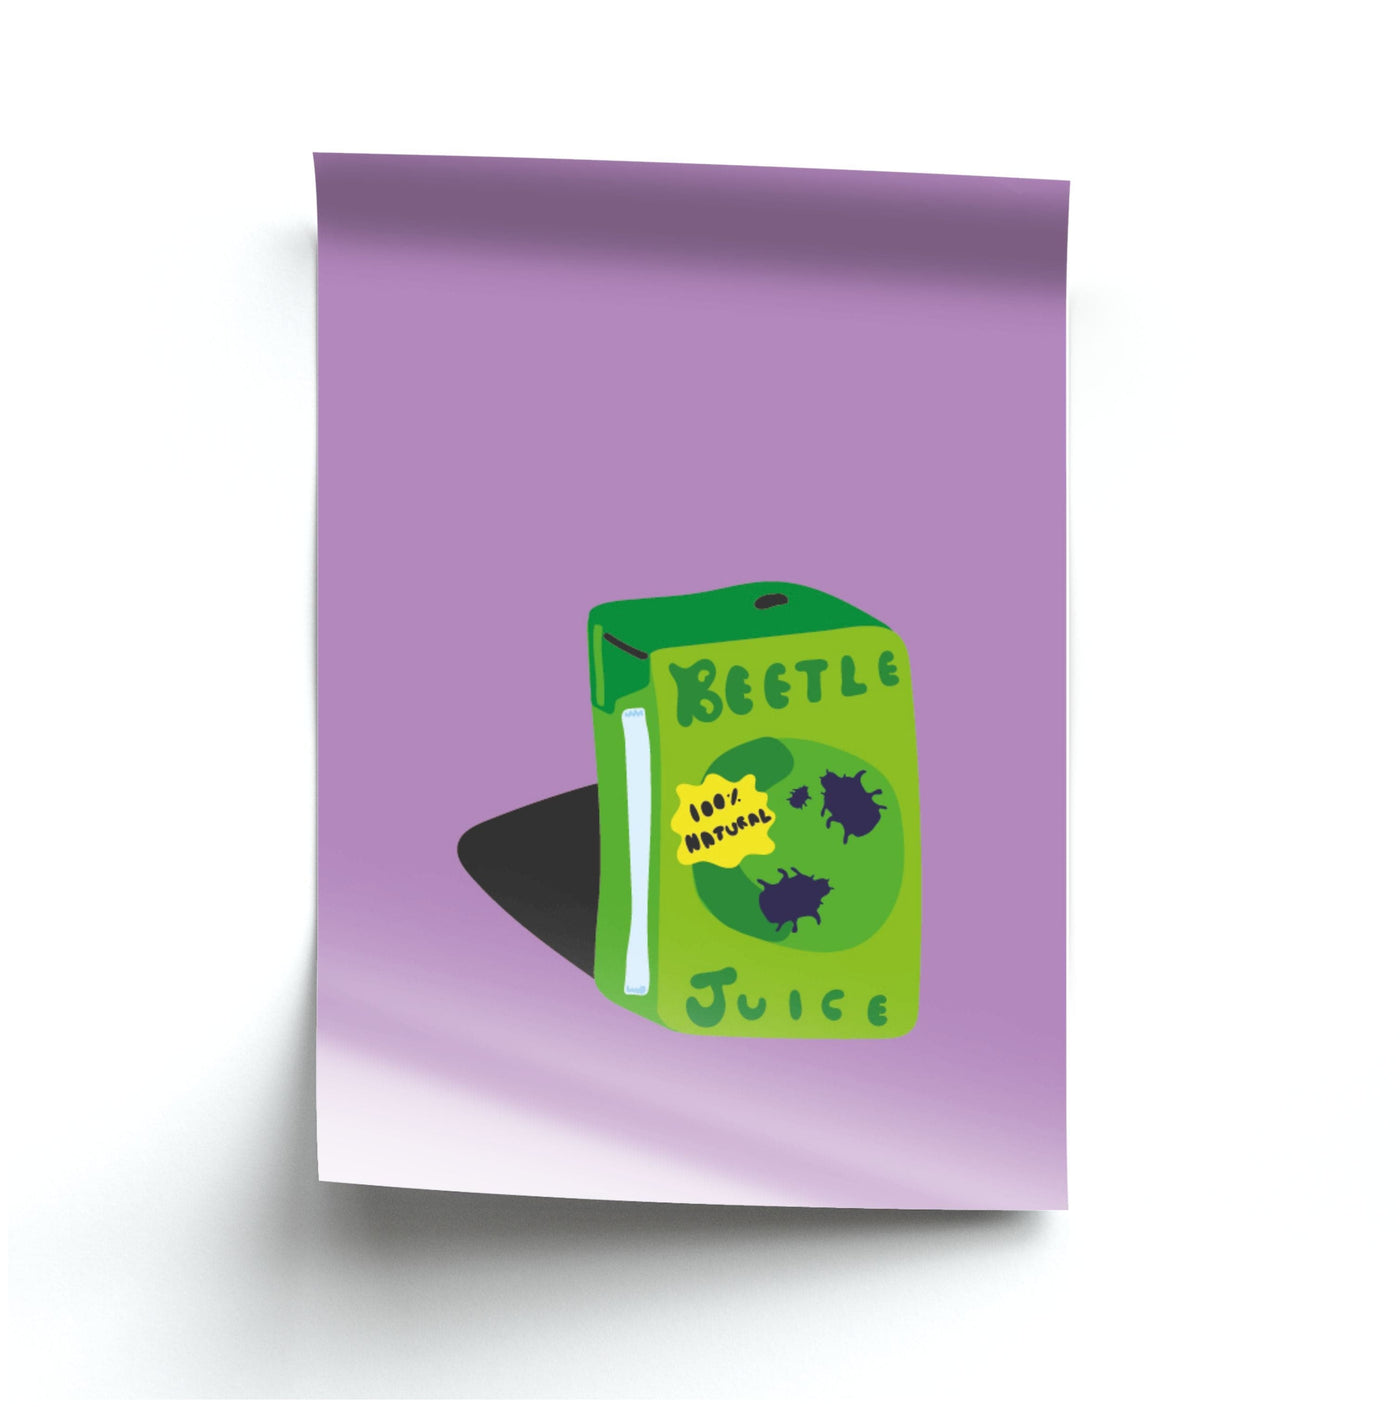 Juice - Beetlejuice Poster